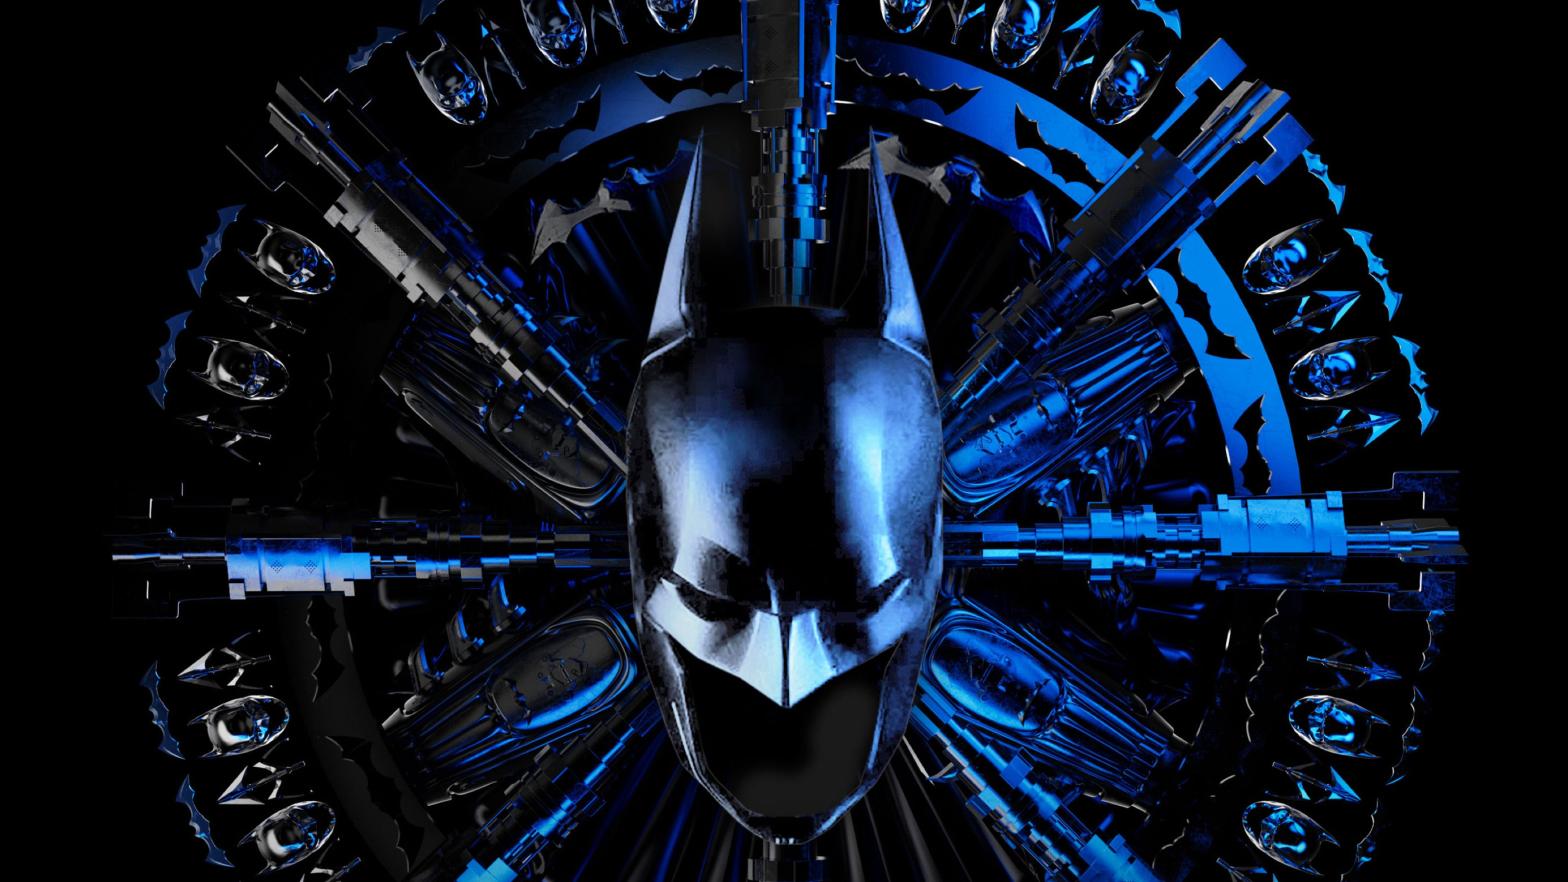 Key art for Batman Unburied. (Image: DC Entertainment/Spotify)